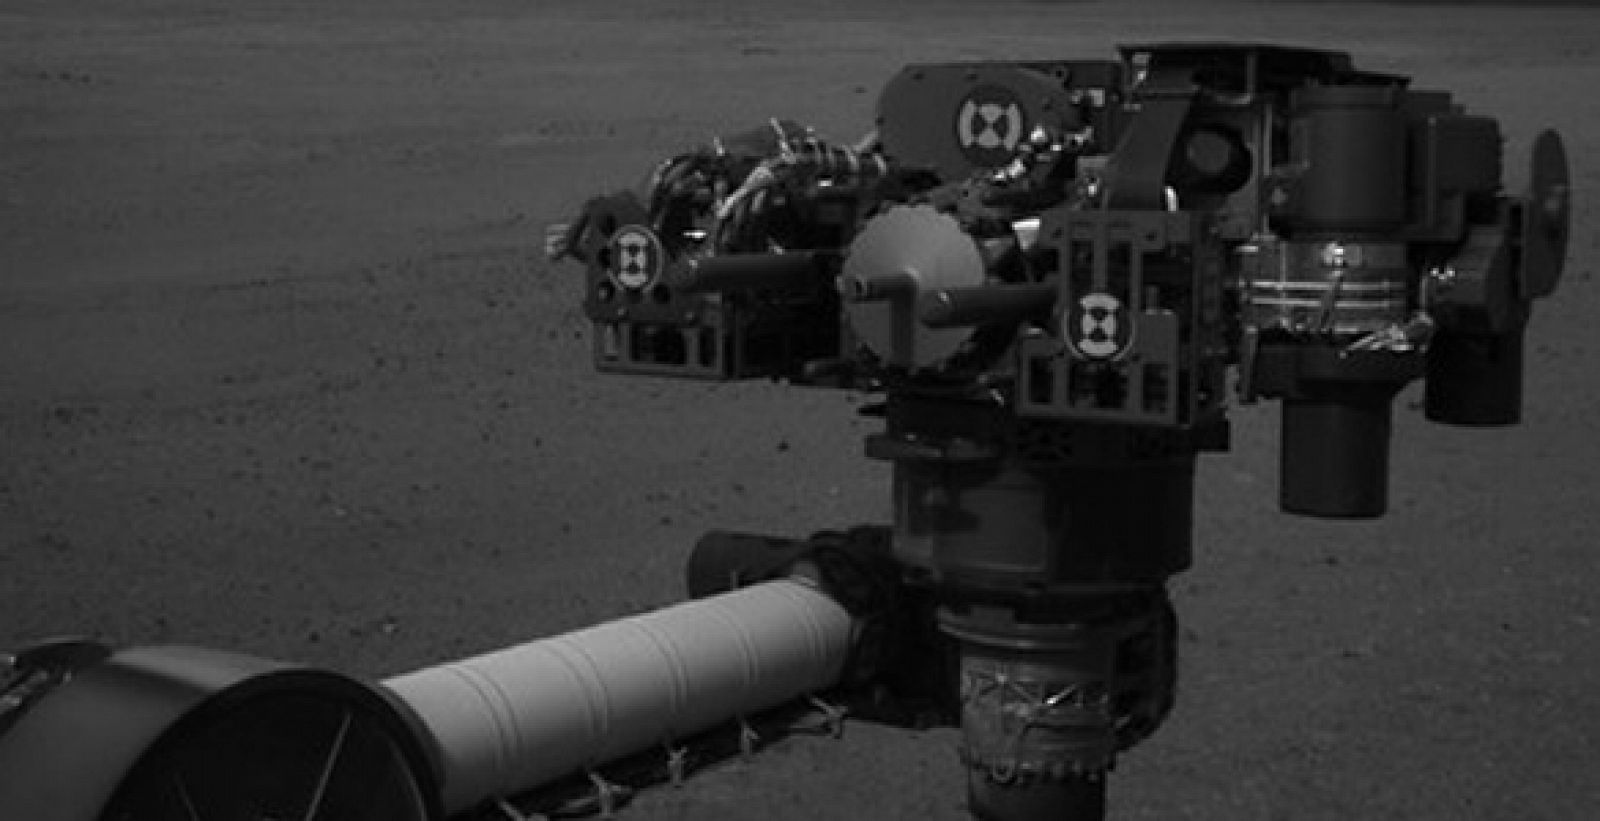 Imagen de alta resolución de la torreta de herramientas del rover de la NASA desplegado en Marte